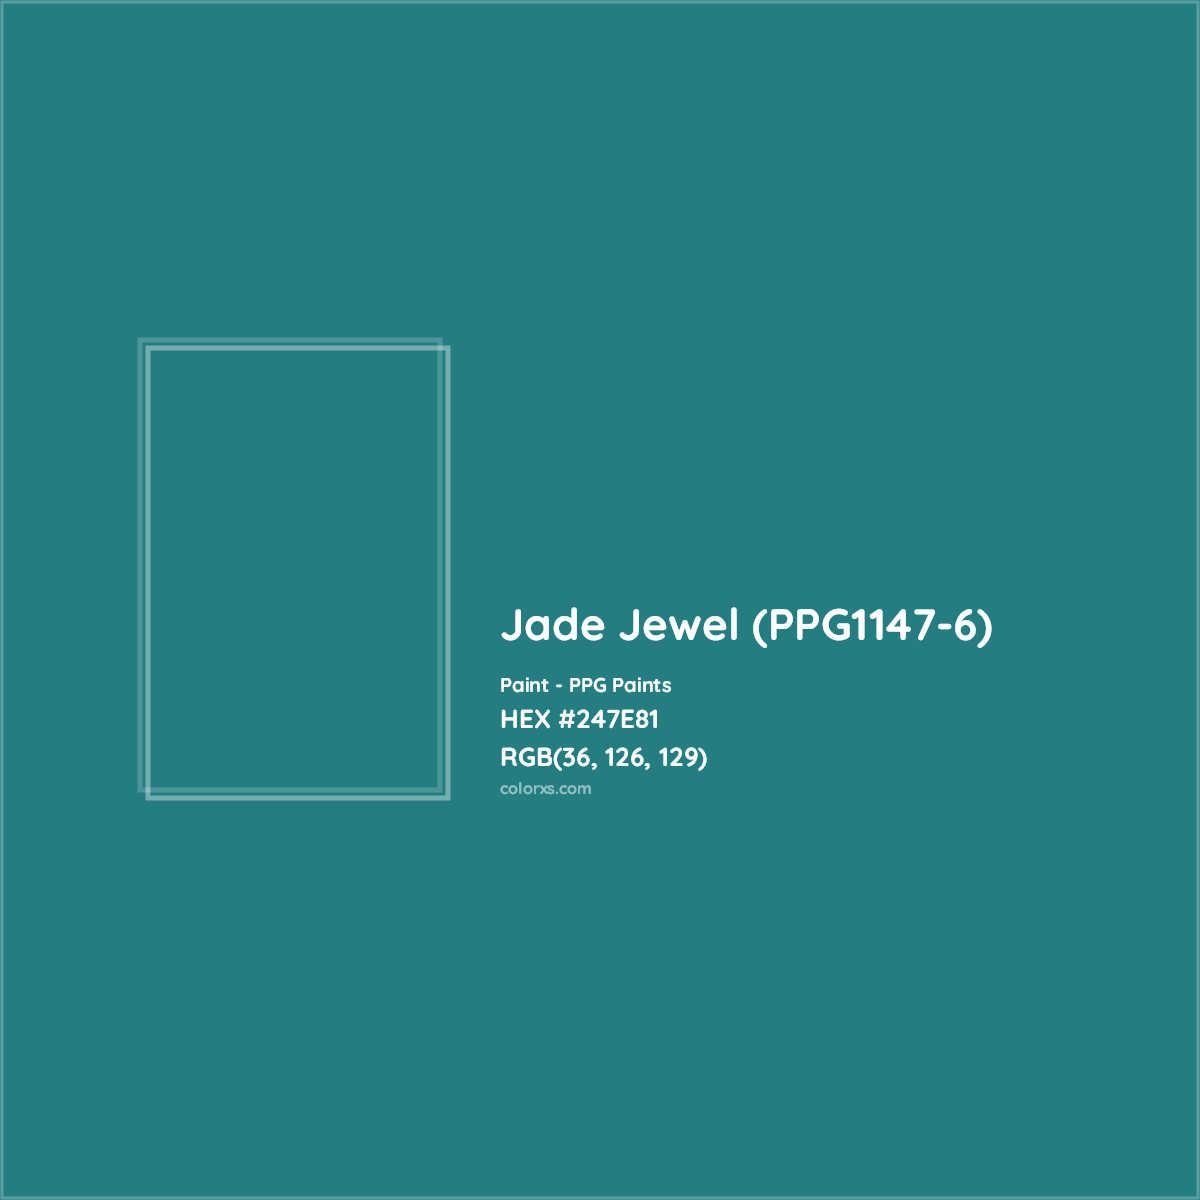 HEX #247E81 Jade Jewel (PPG1147-6) Paint PPG Paints - Color Code